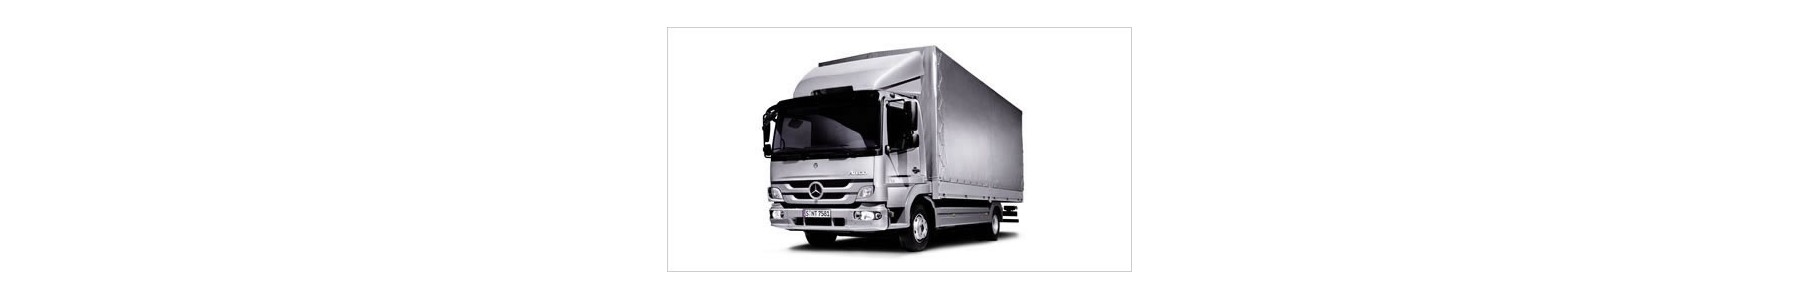 Déflecteur de toit et carénage pour votre camion Mercedes ATEGO 22h22: Vente accessoires tuning poids lourd